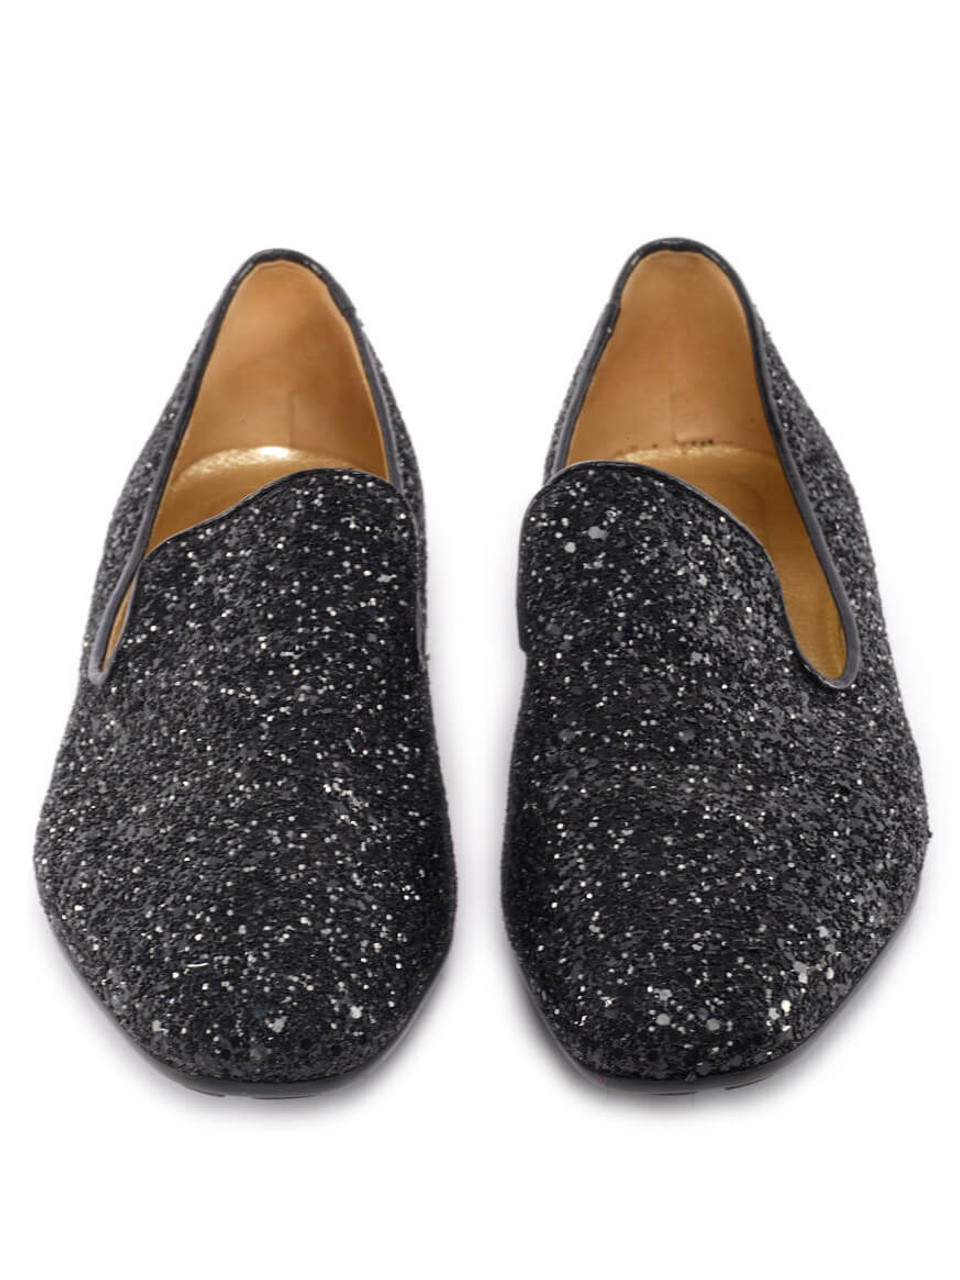 Women Jimmy Choo Marlo Twilight Coarse Glitter Loafers - Black Size UK 6 US 9 EU 39